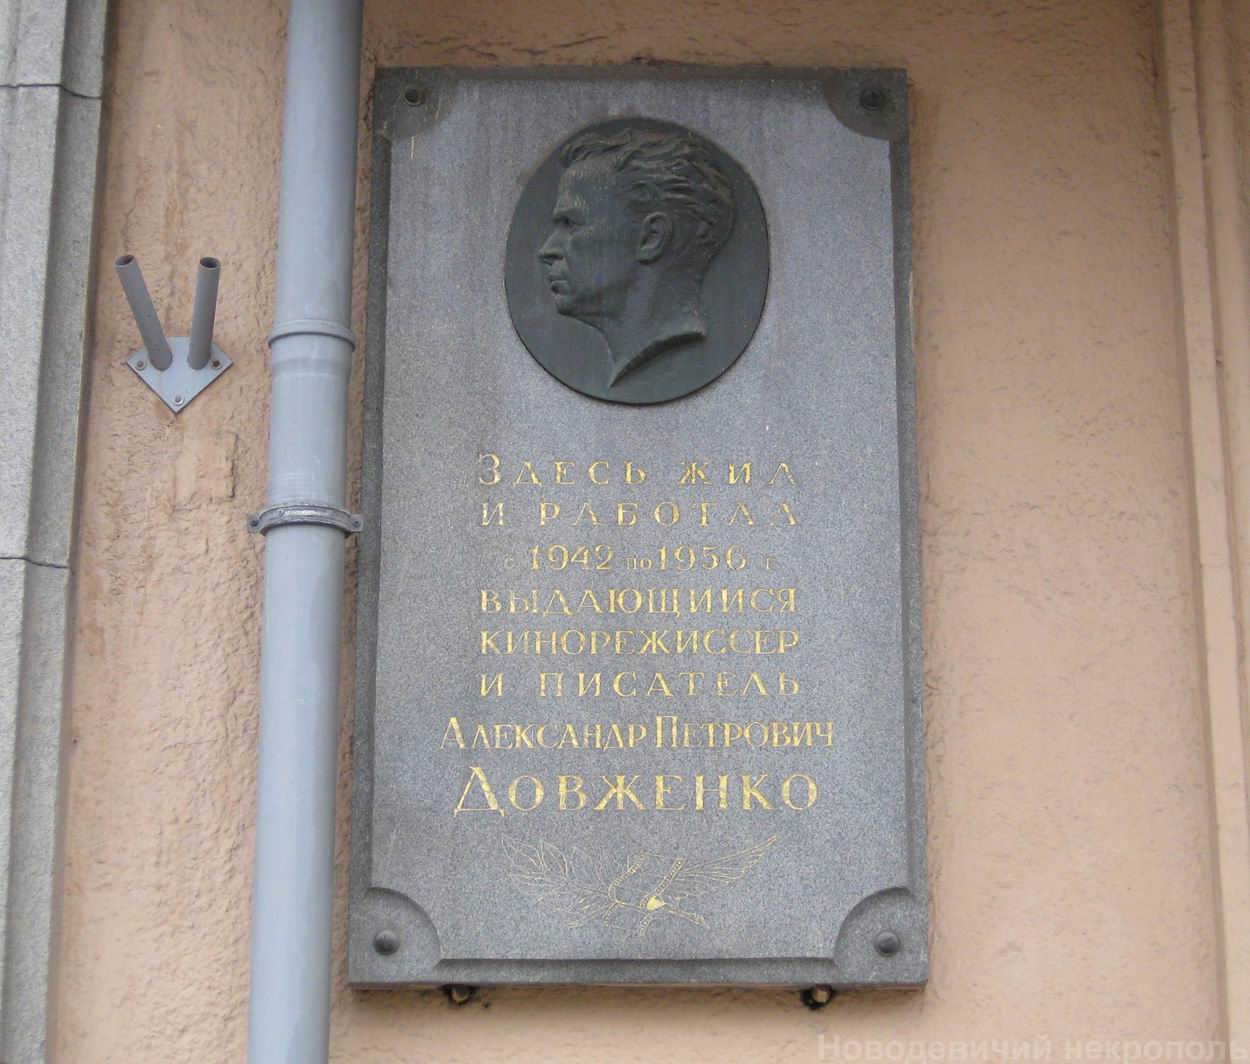 Мемориальная доска Довженко А.П. (1894–1956), ск. Н.П.Гаврилов, арх. Ю.В.Щуко, на Кутузовском проспекте, дом 22, открыта 2.12.1957.